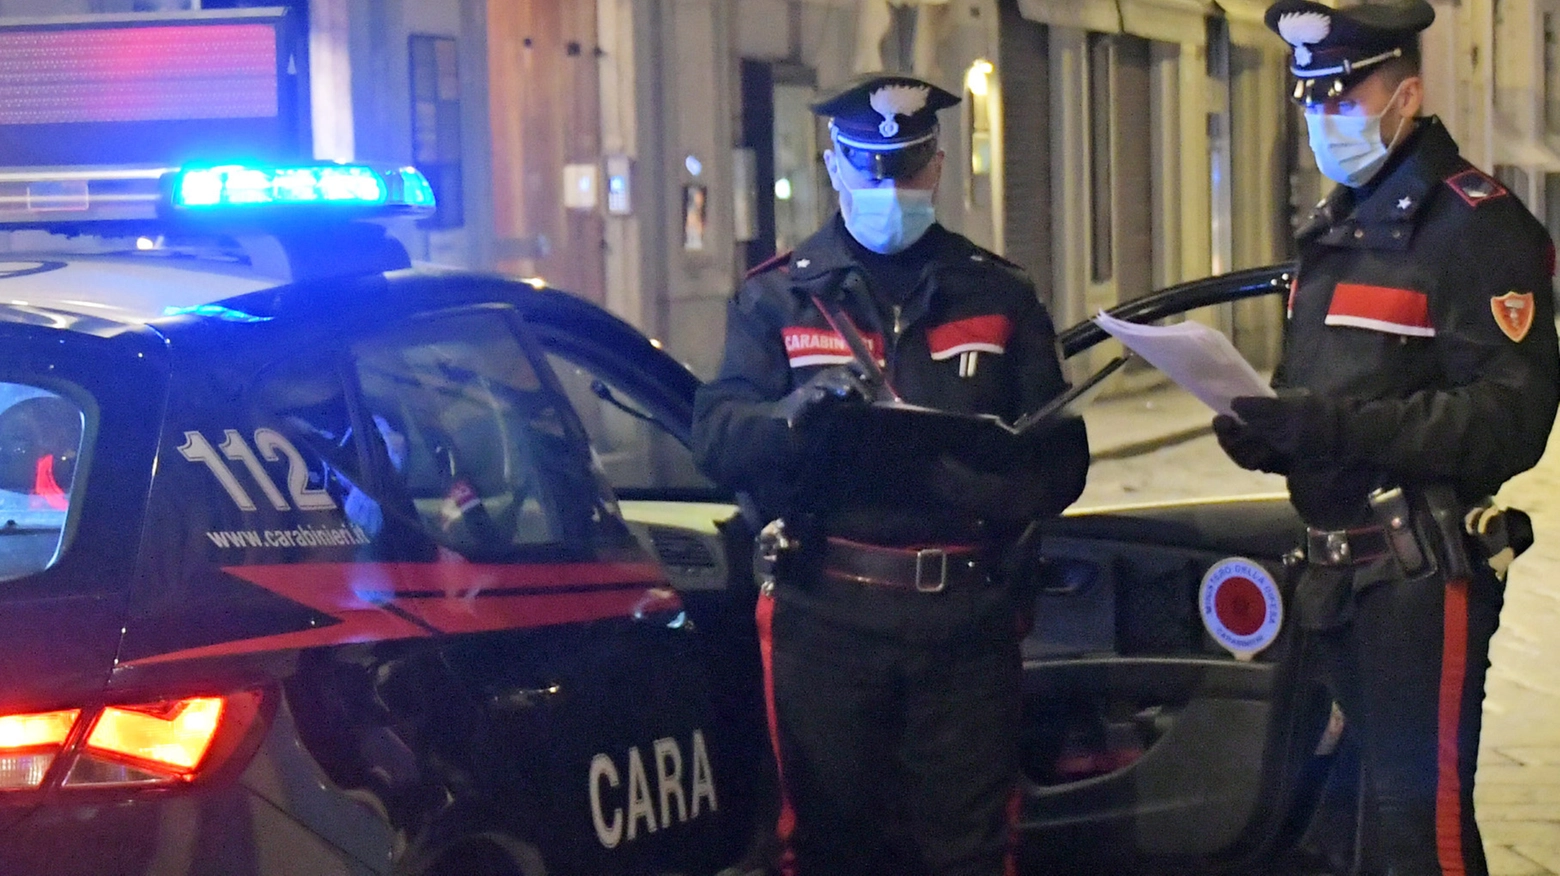 Carabinieri (immagini di repertorio)